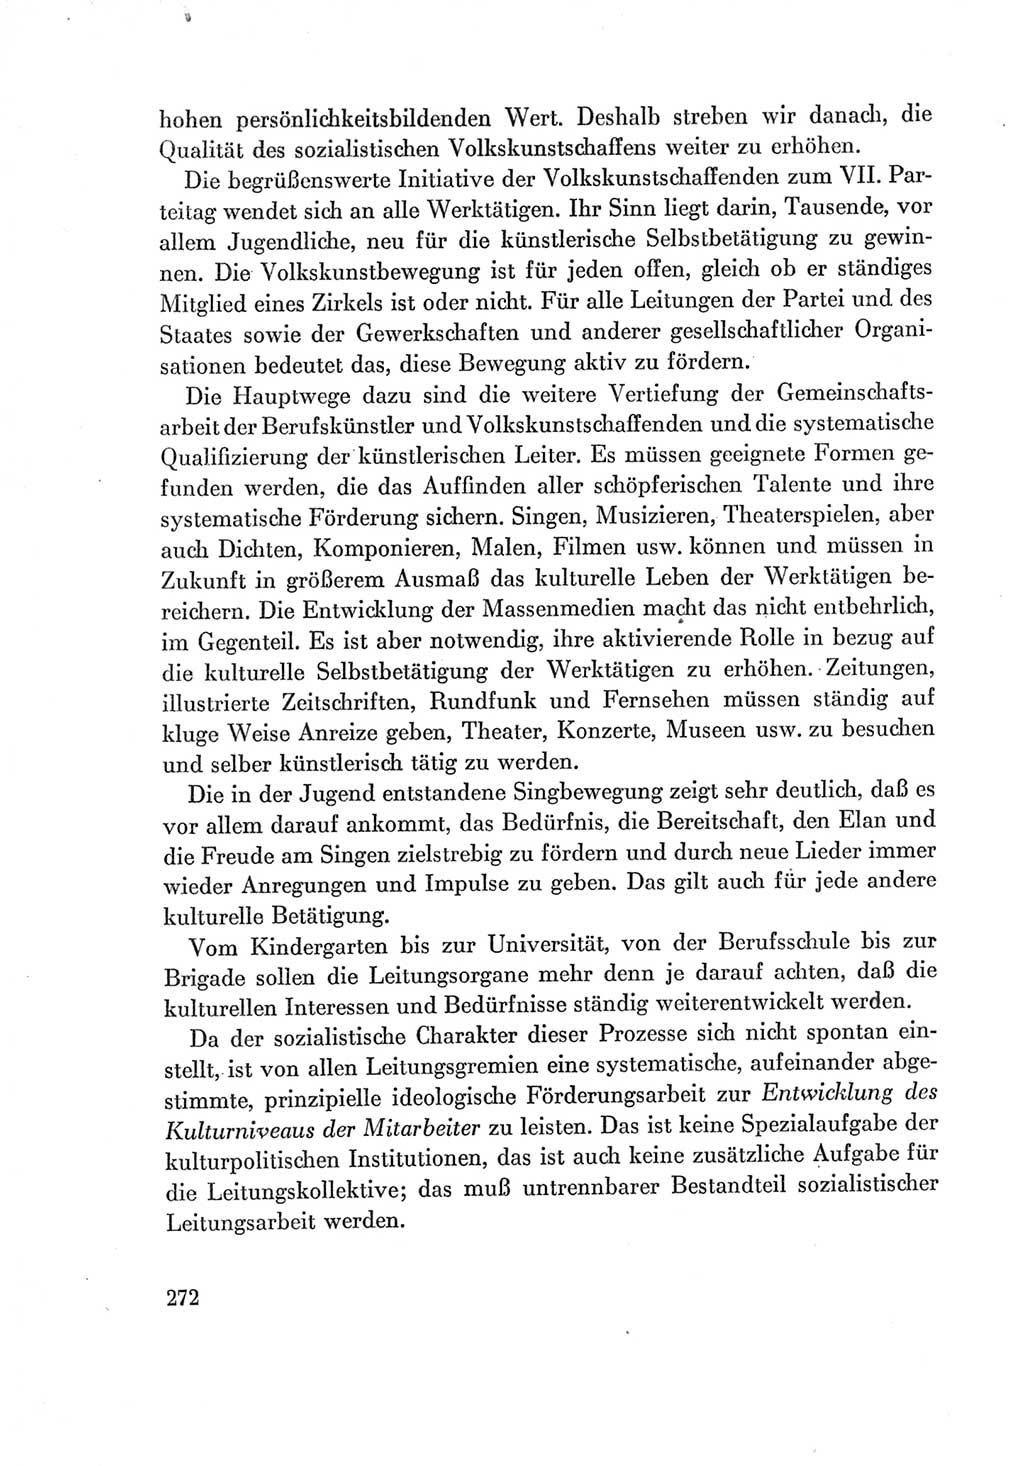 Protokoll der Verhandlungen des Ⅶ. Parteitages der Sozialistischen Einheitspartei Deutschlands (SED) [Deutsche Demokratische Republik (DDR)] 1967, Band Ⅰ, Seite 272 (Prot. Verh. Ⅶ. PT SED DDR 1967, Bd. Ⅰ, S. 272)